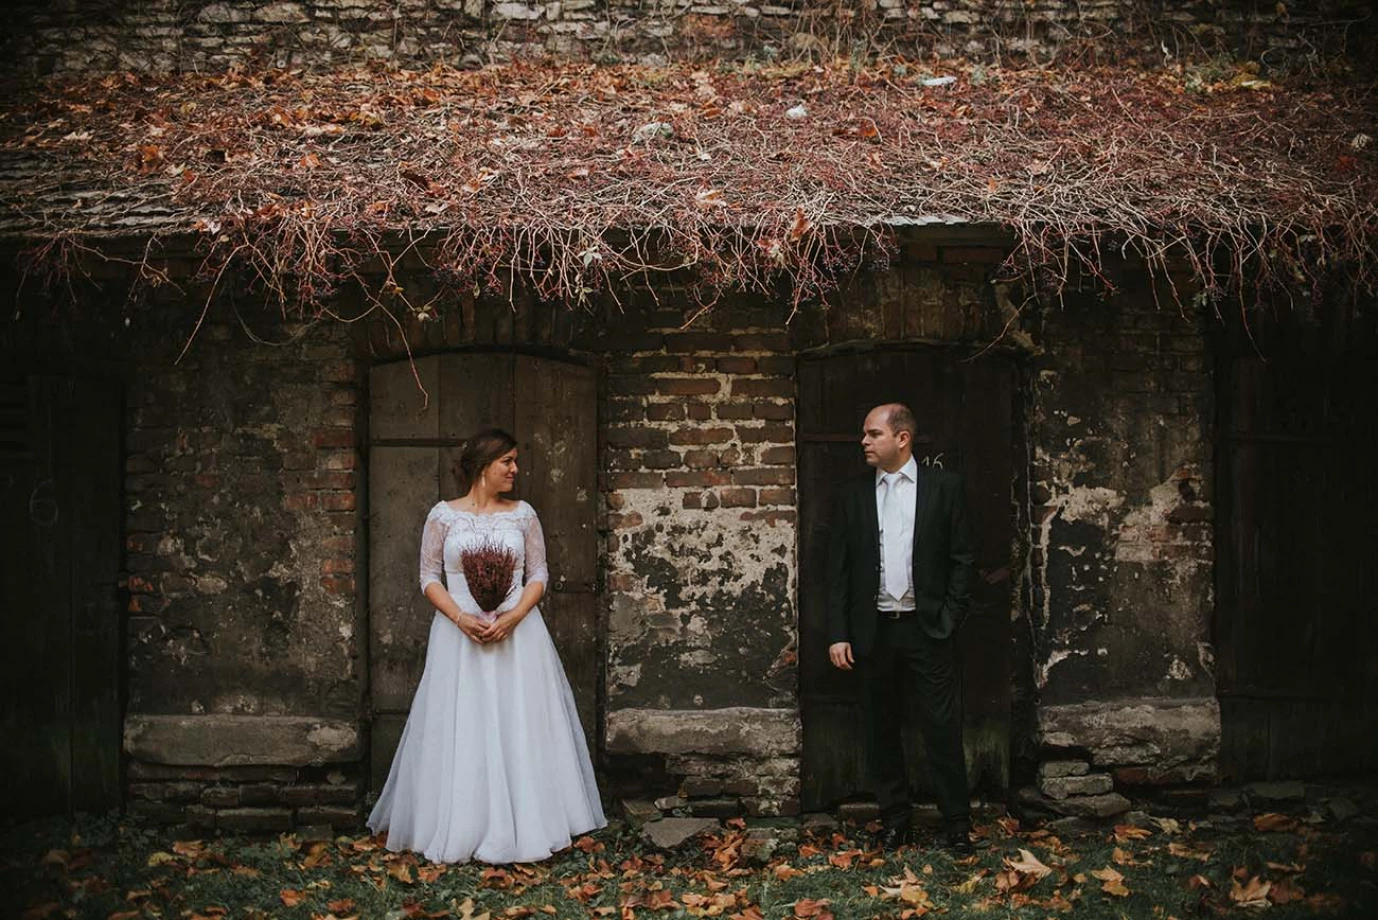 zdjęcia krakow fotograf fotograf-marcin portfolio zdjecia slubne inspiracje wesele plener slubny